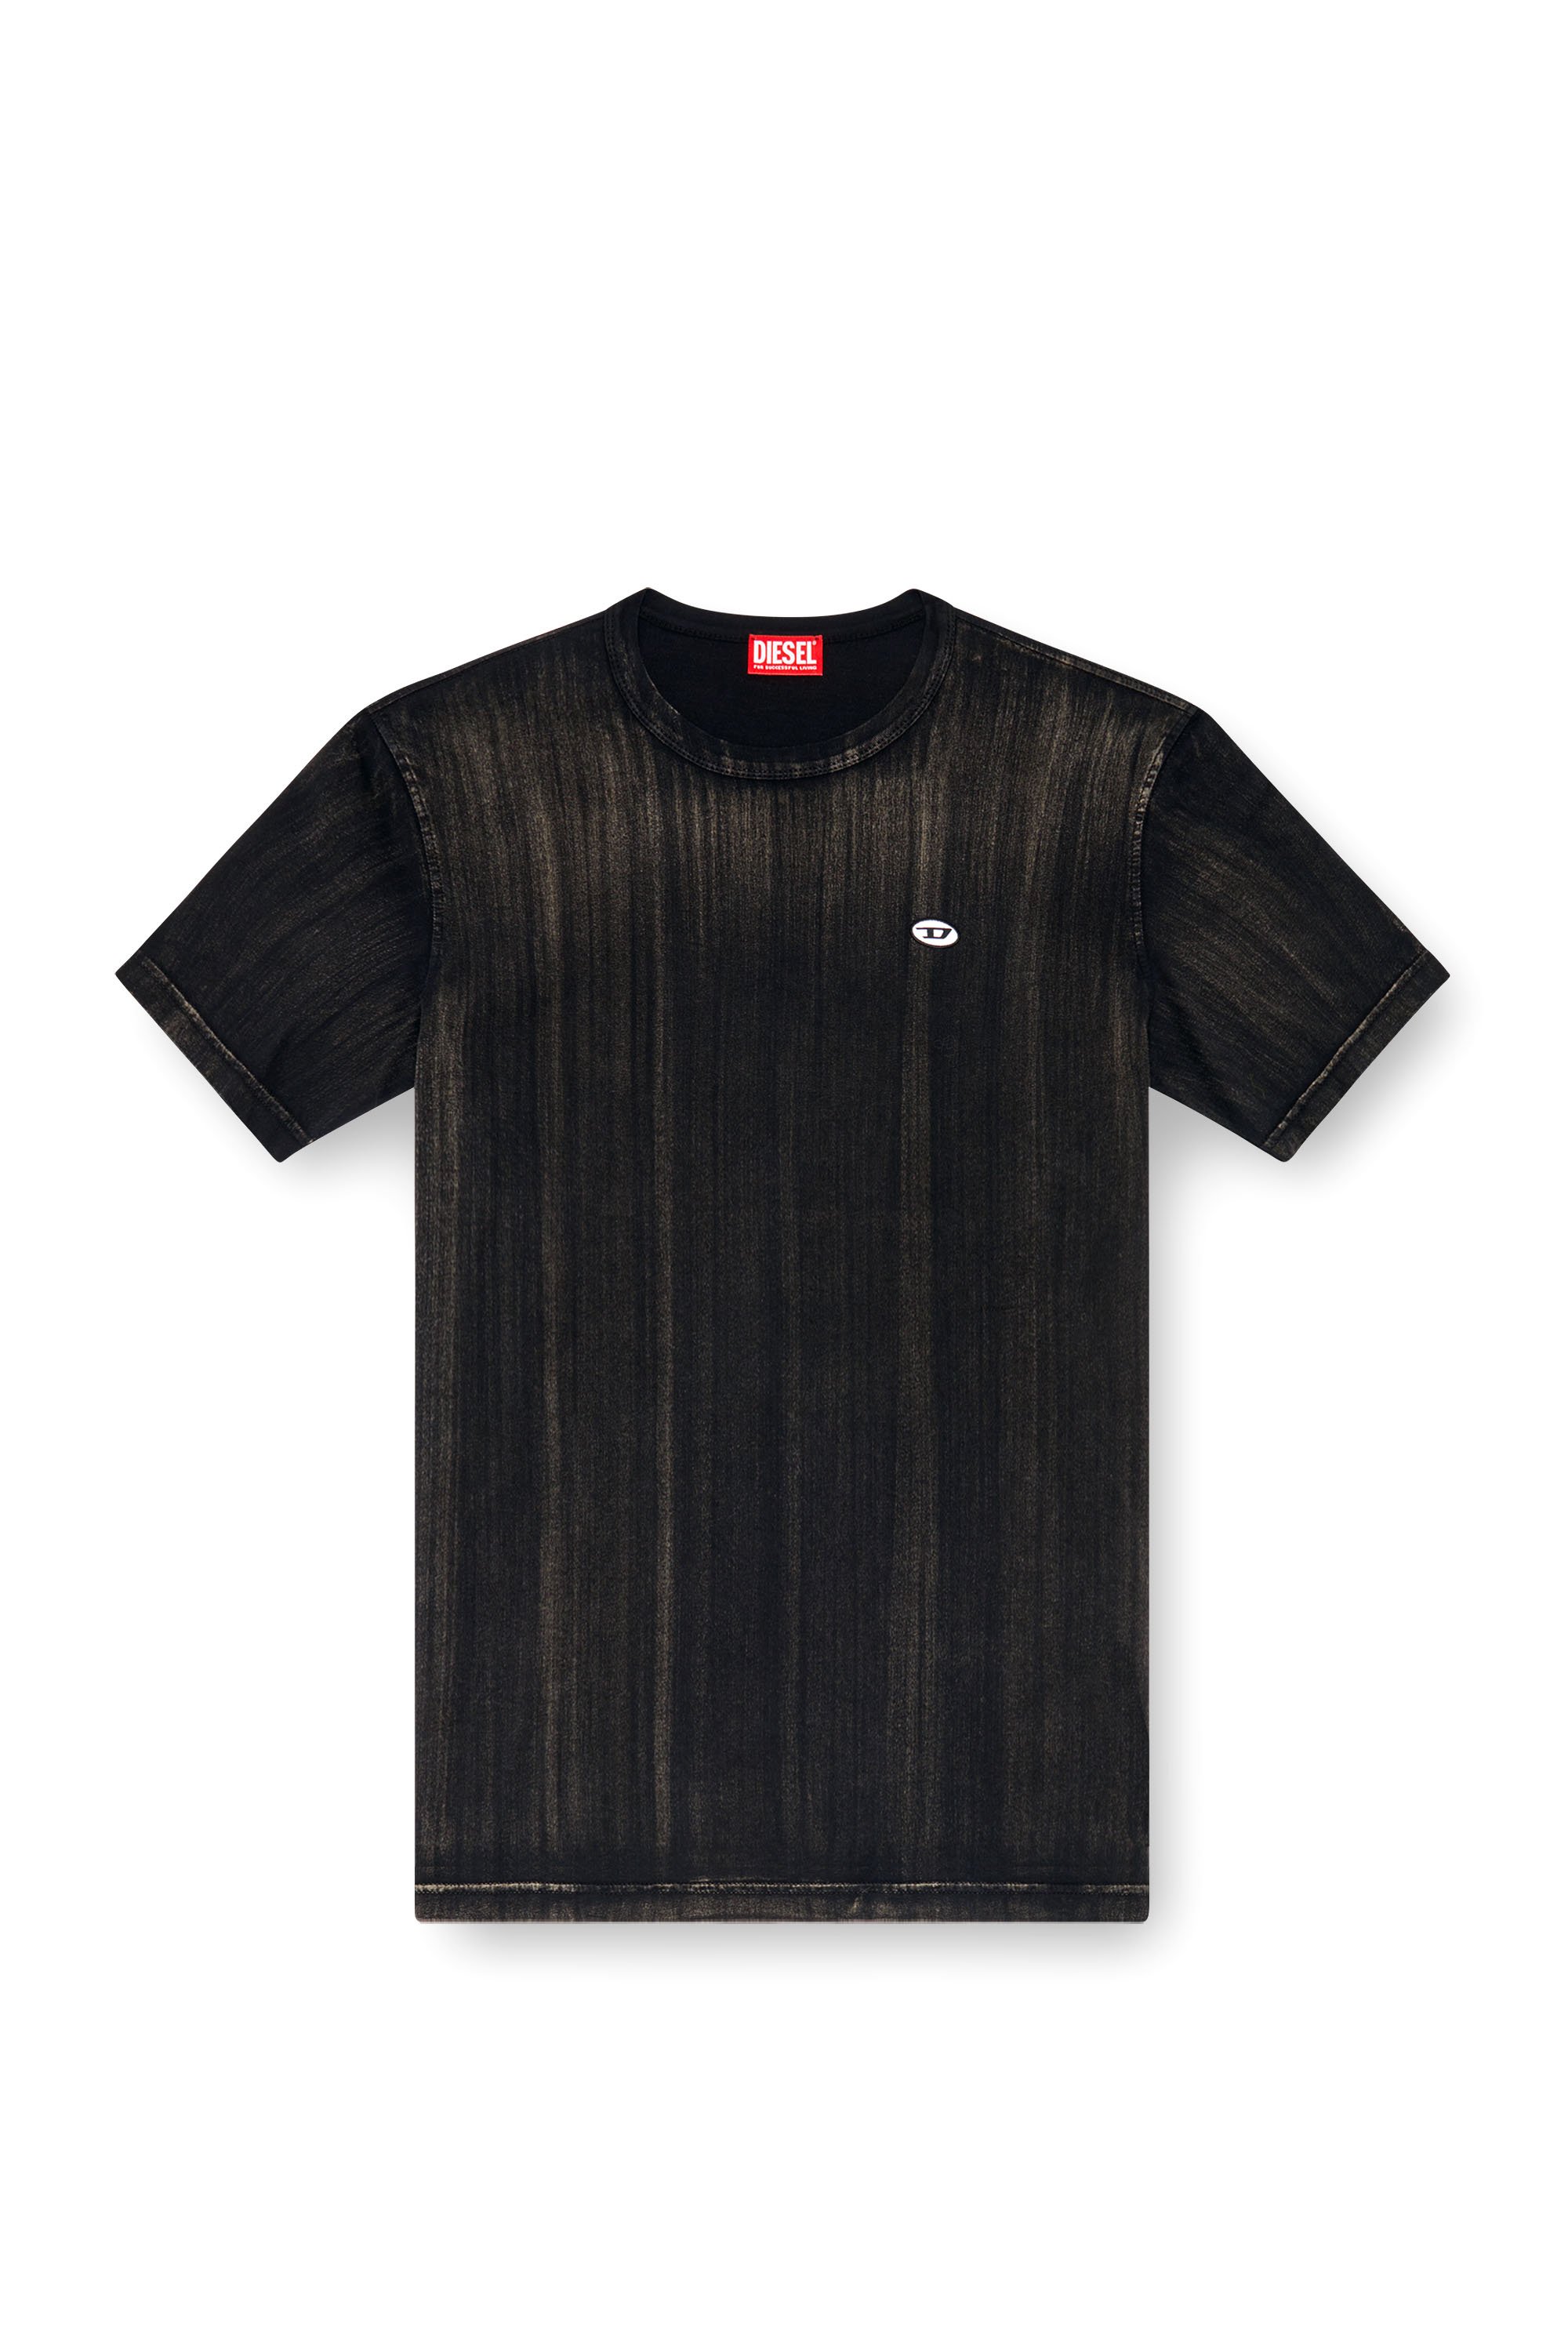 Diesel - T-ADJUST-K8, Homme T-shirt avec effet délavé au pinceau in Noir - Image 3